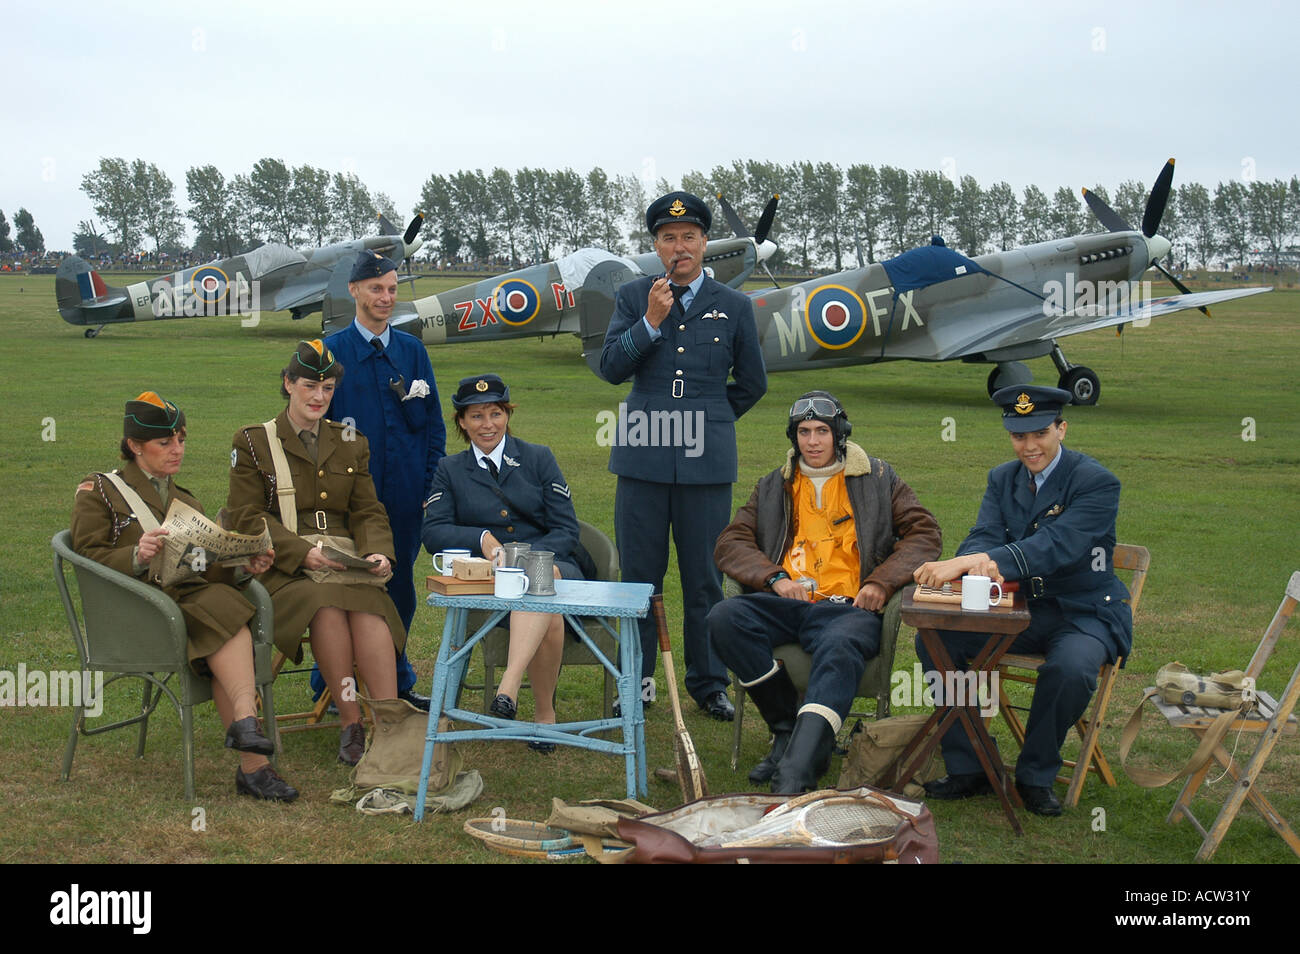 Goodwood Revival 2006, Seconde Guerre mondiale Renaissance de l'Escadron de chasse avec l'Aérodrome de Spitfire dans l'arrière-plan Banque D'Images